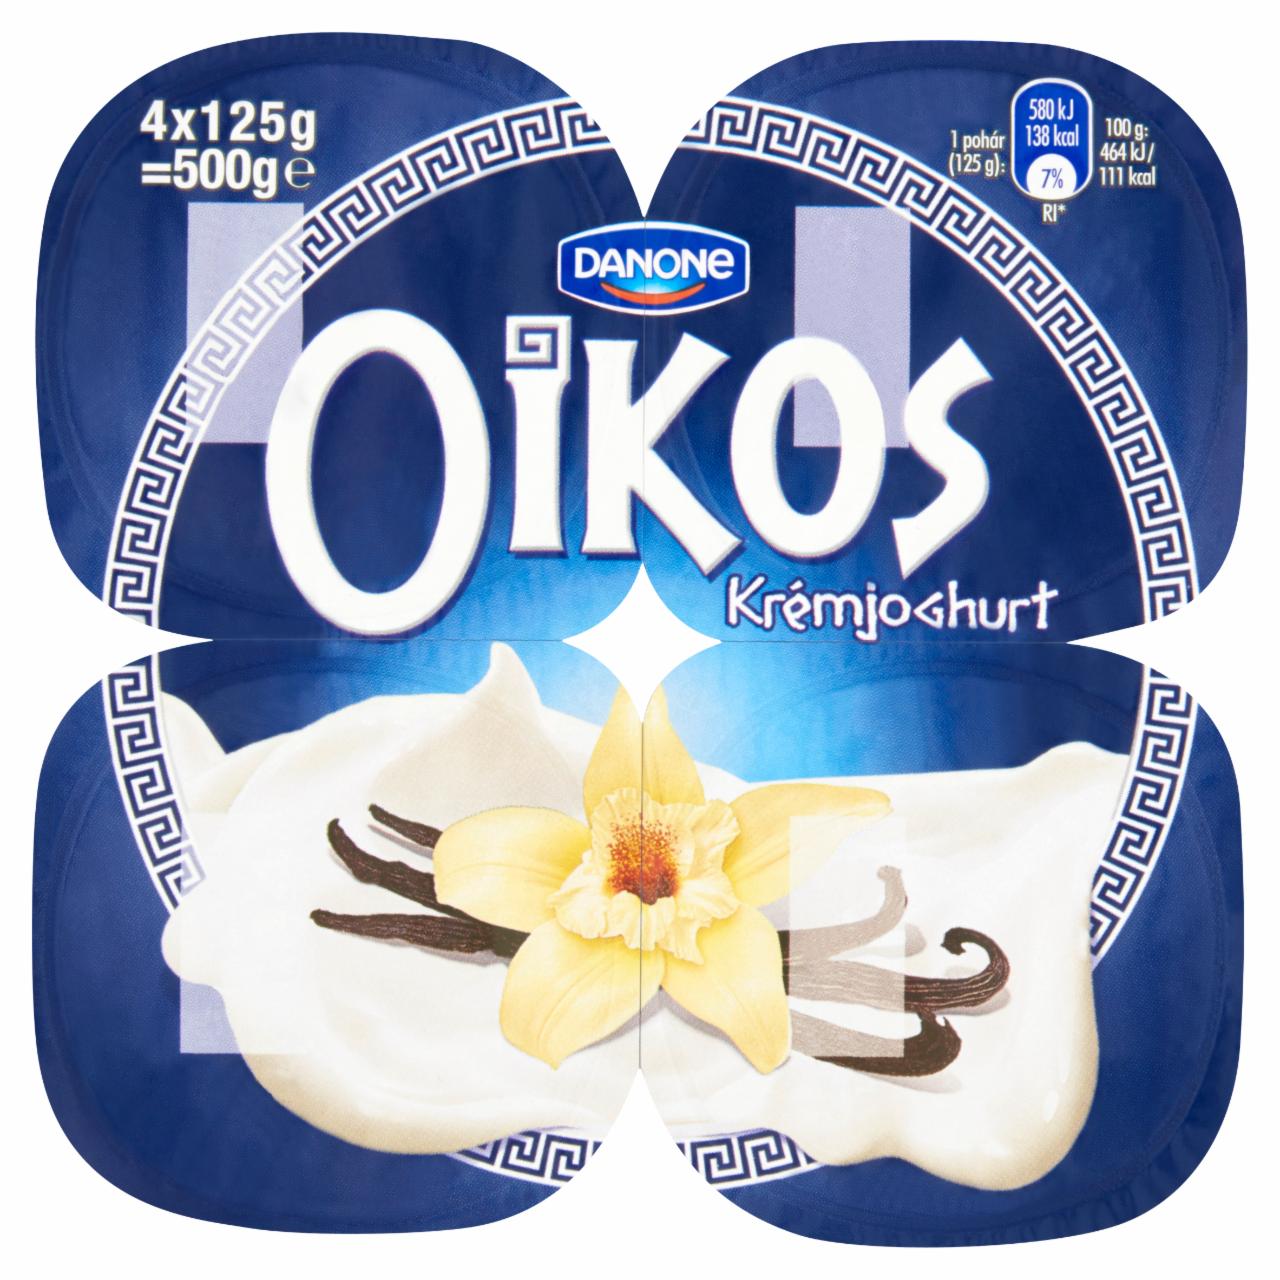 Képek - Danone Oikos Görög vaníliaízű élőflórás krémjoghurt 4 x 125 g